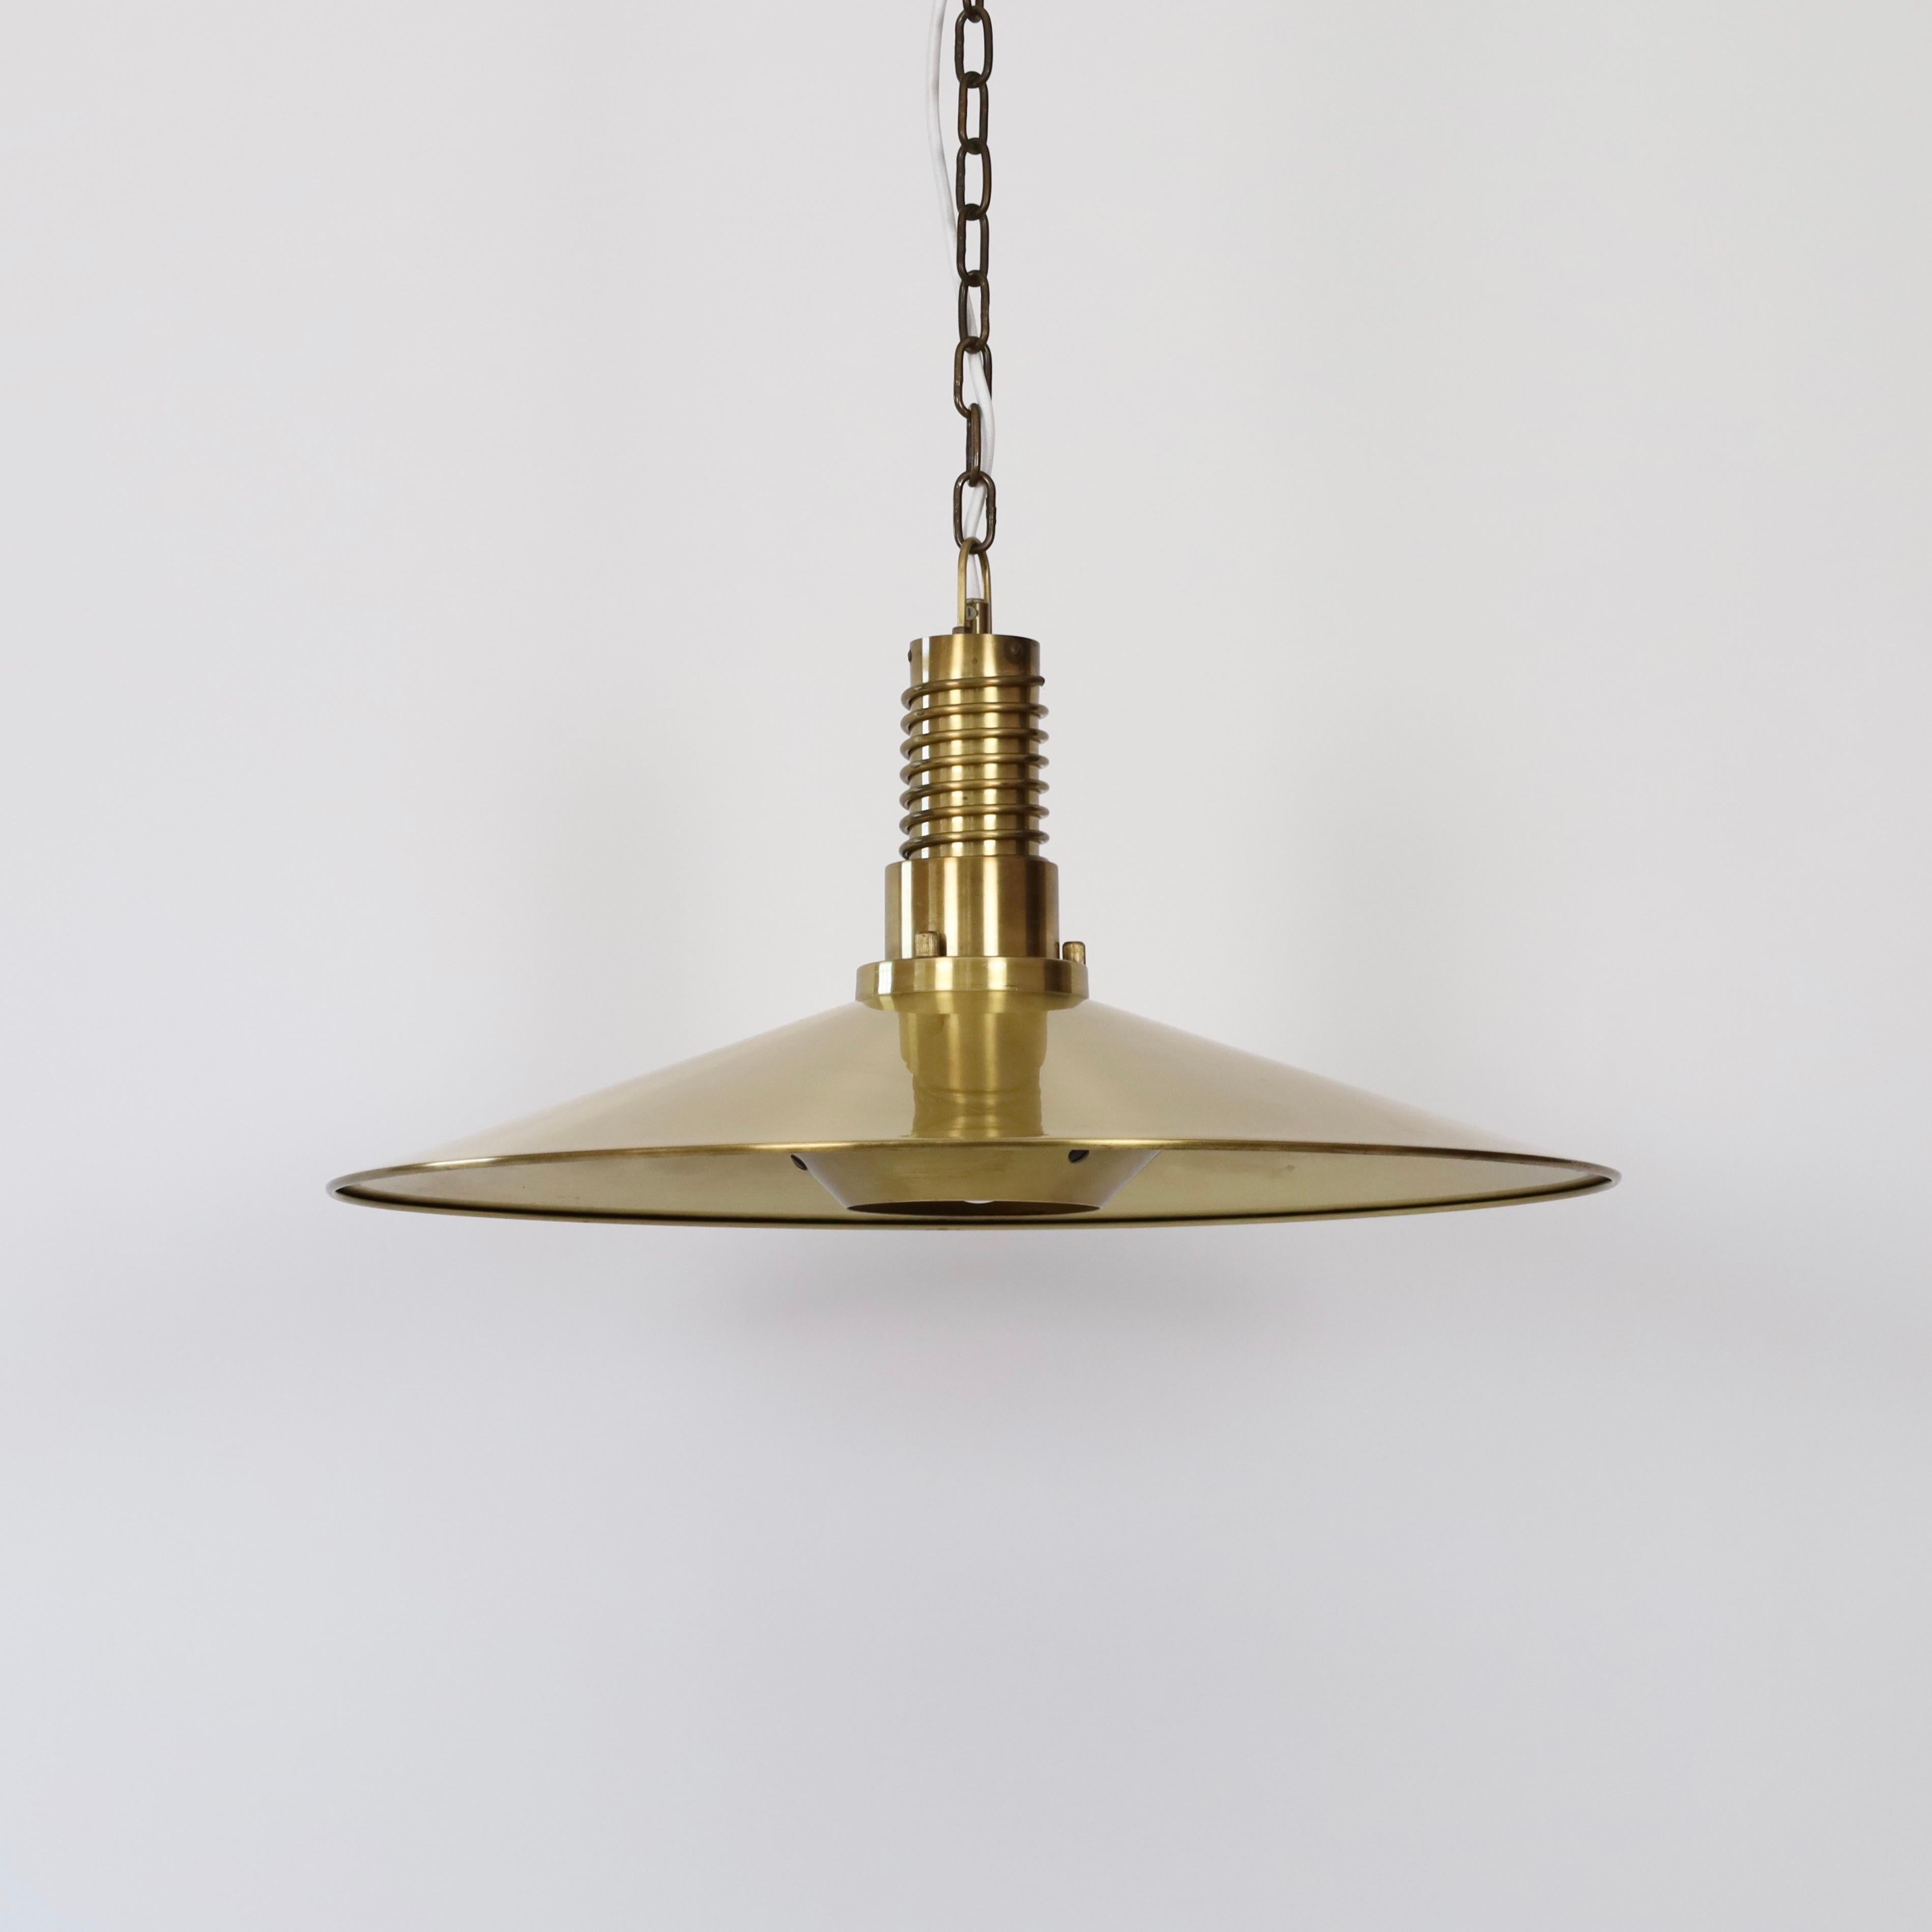 Substantial Danish Modern Brass Pendant Light by Fog & Morup, 1960s, Denmark For Sale 9